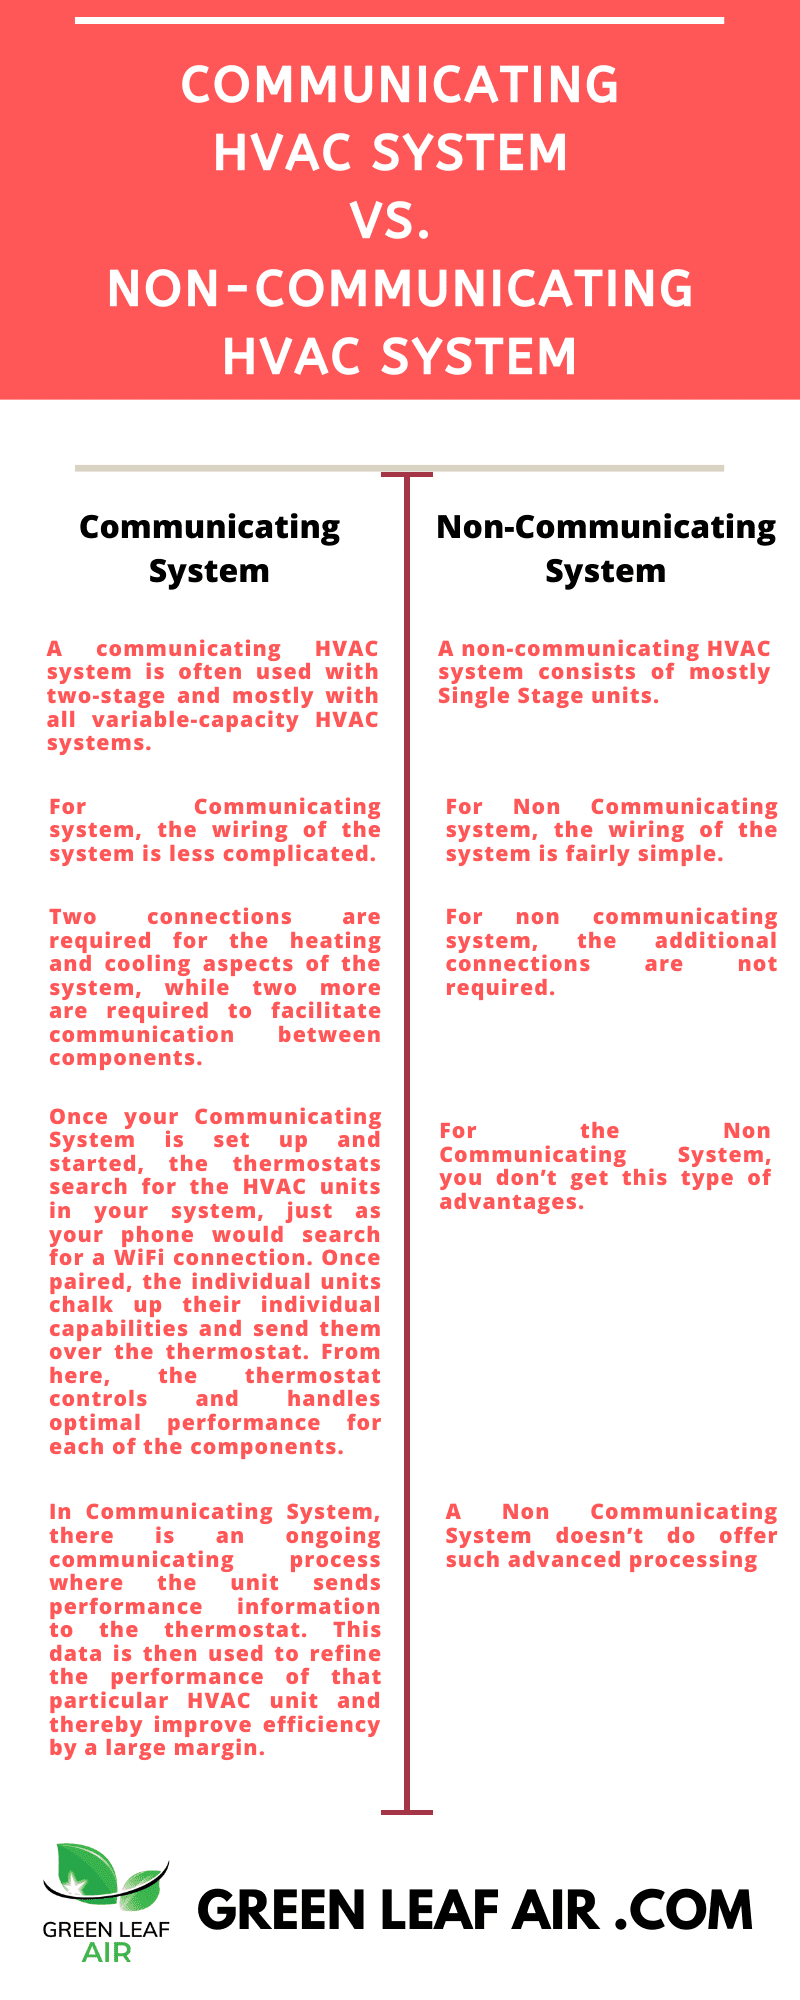 Communicating HVAC System vs. Non-Communicating HVAC System